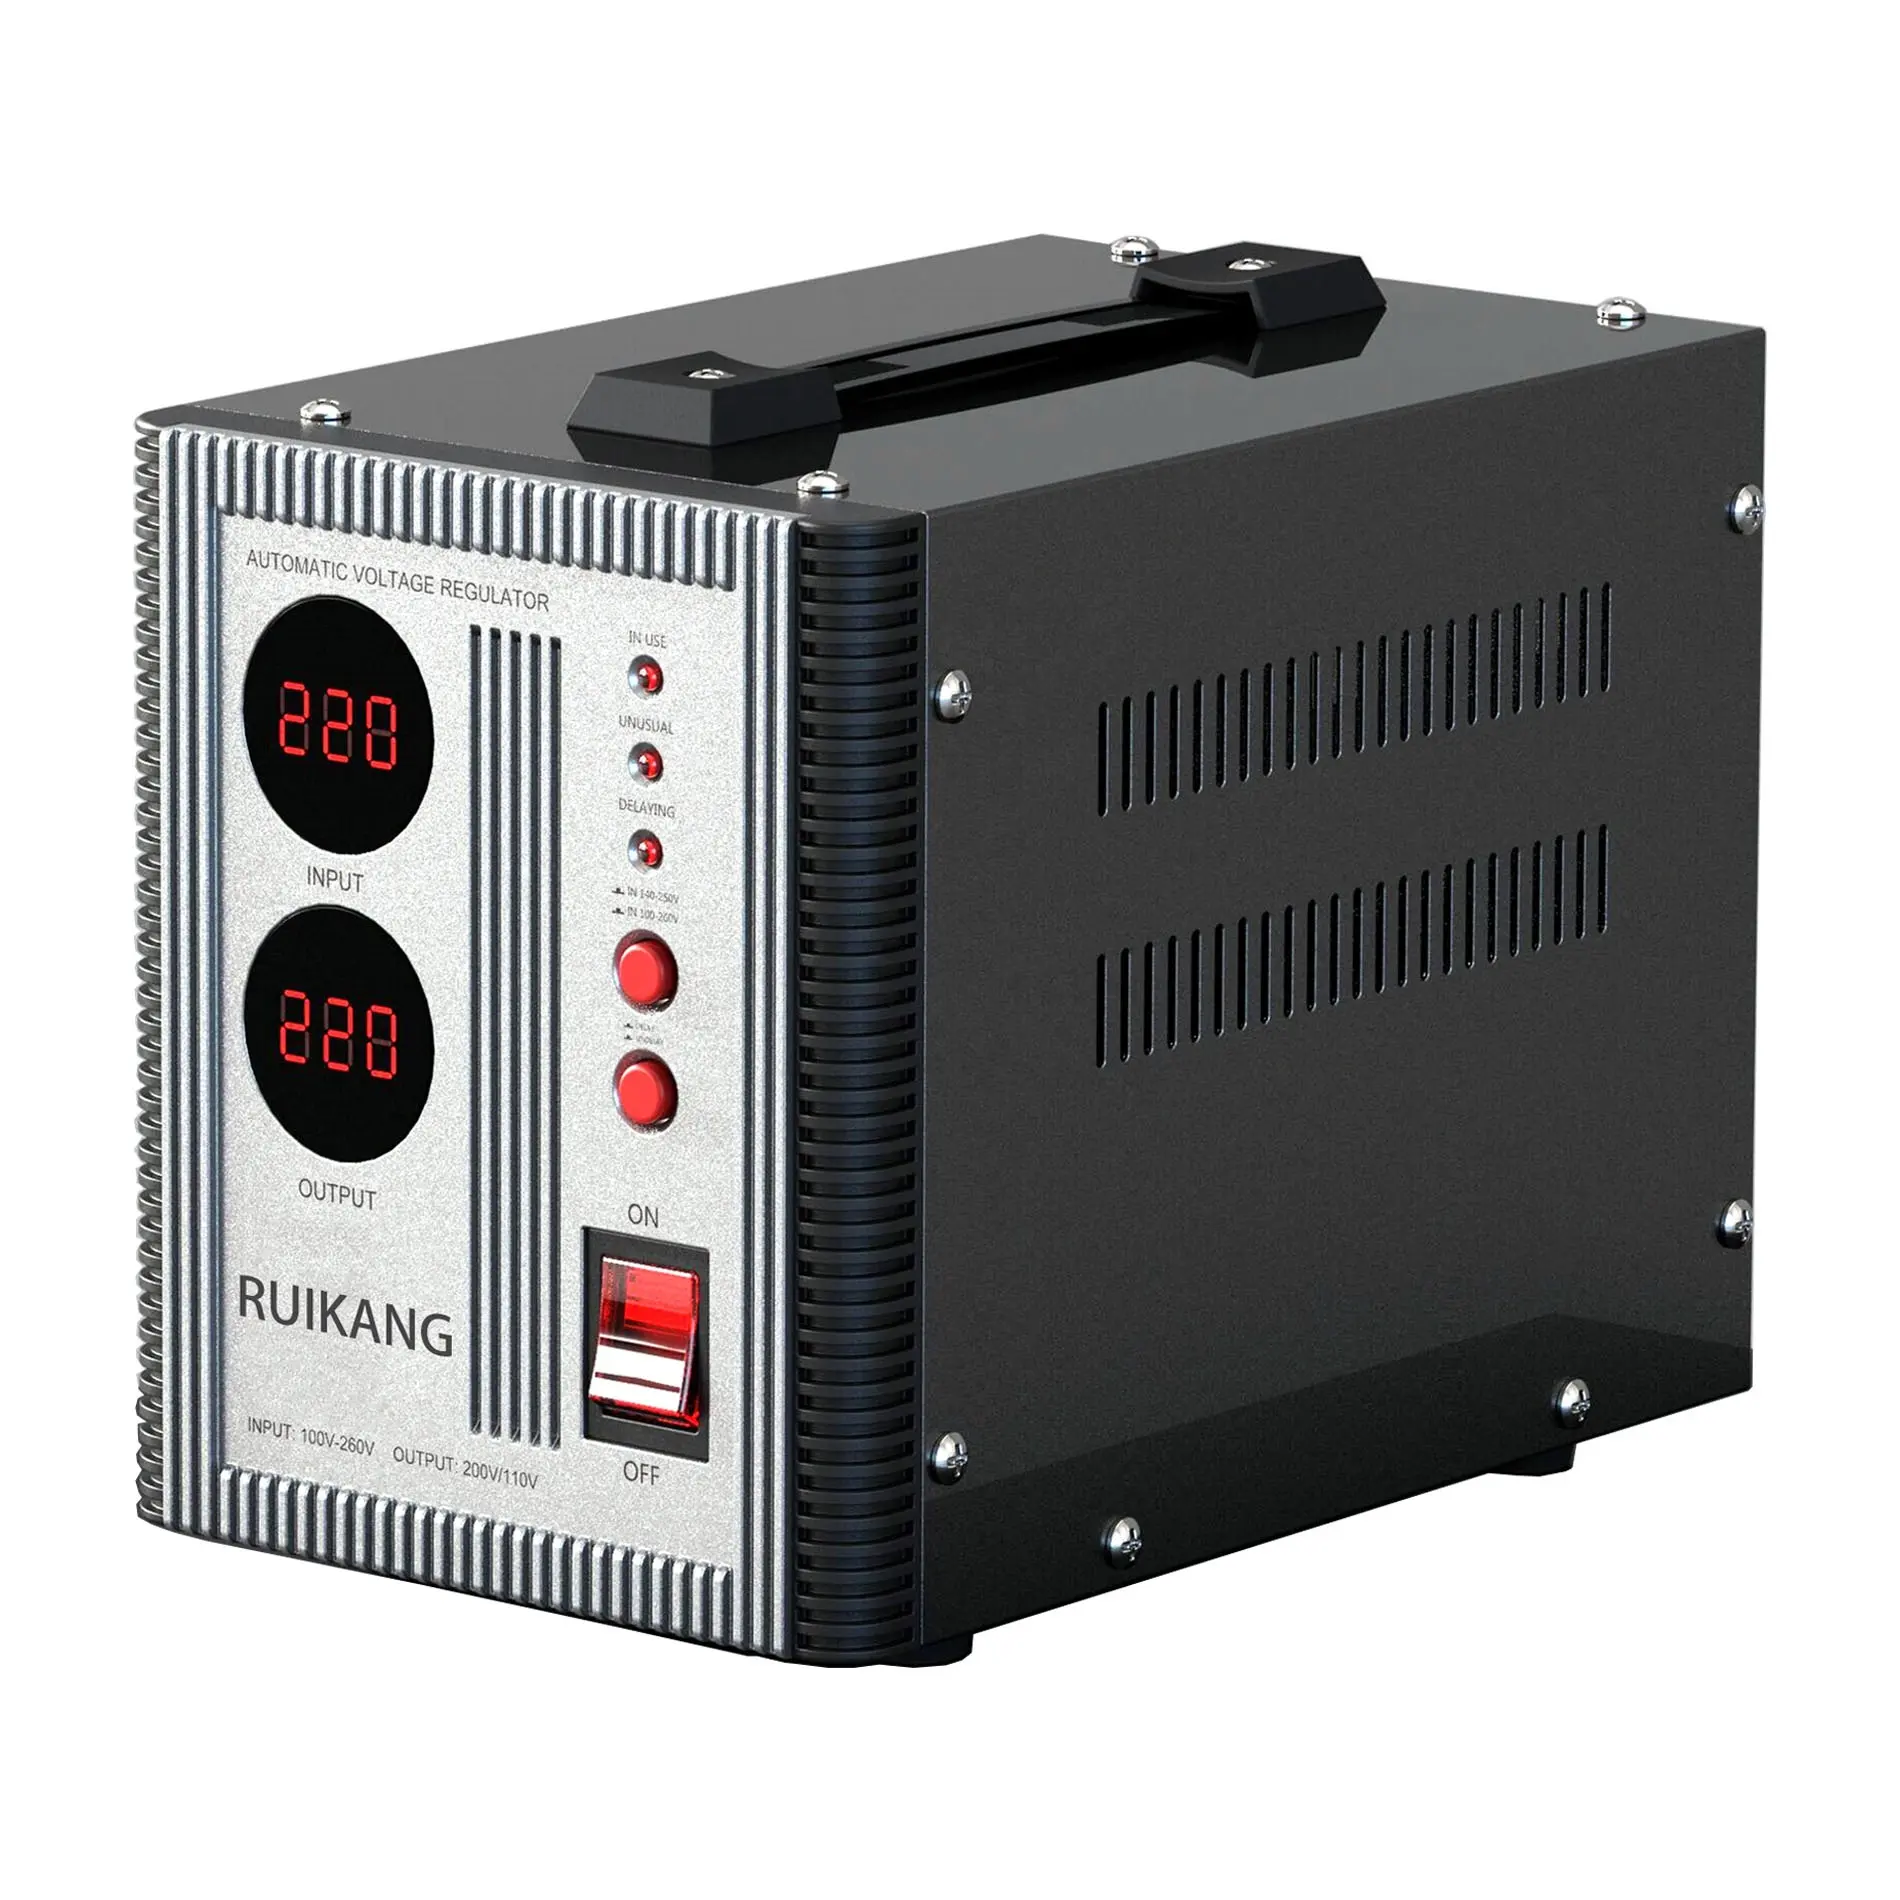 RUIKANG-regulador de voltaje automático monofásico para ordenador, pantalla Digital de 140V a 260V, entrada de 1500VA, 50hz y 60hz